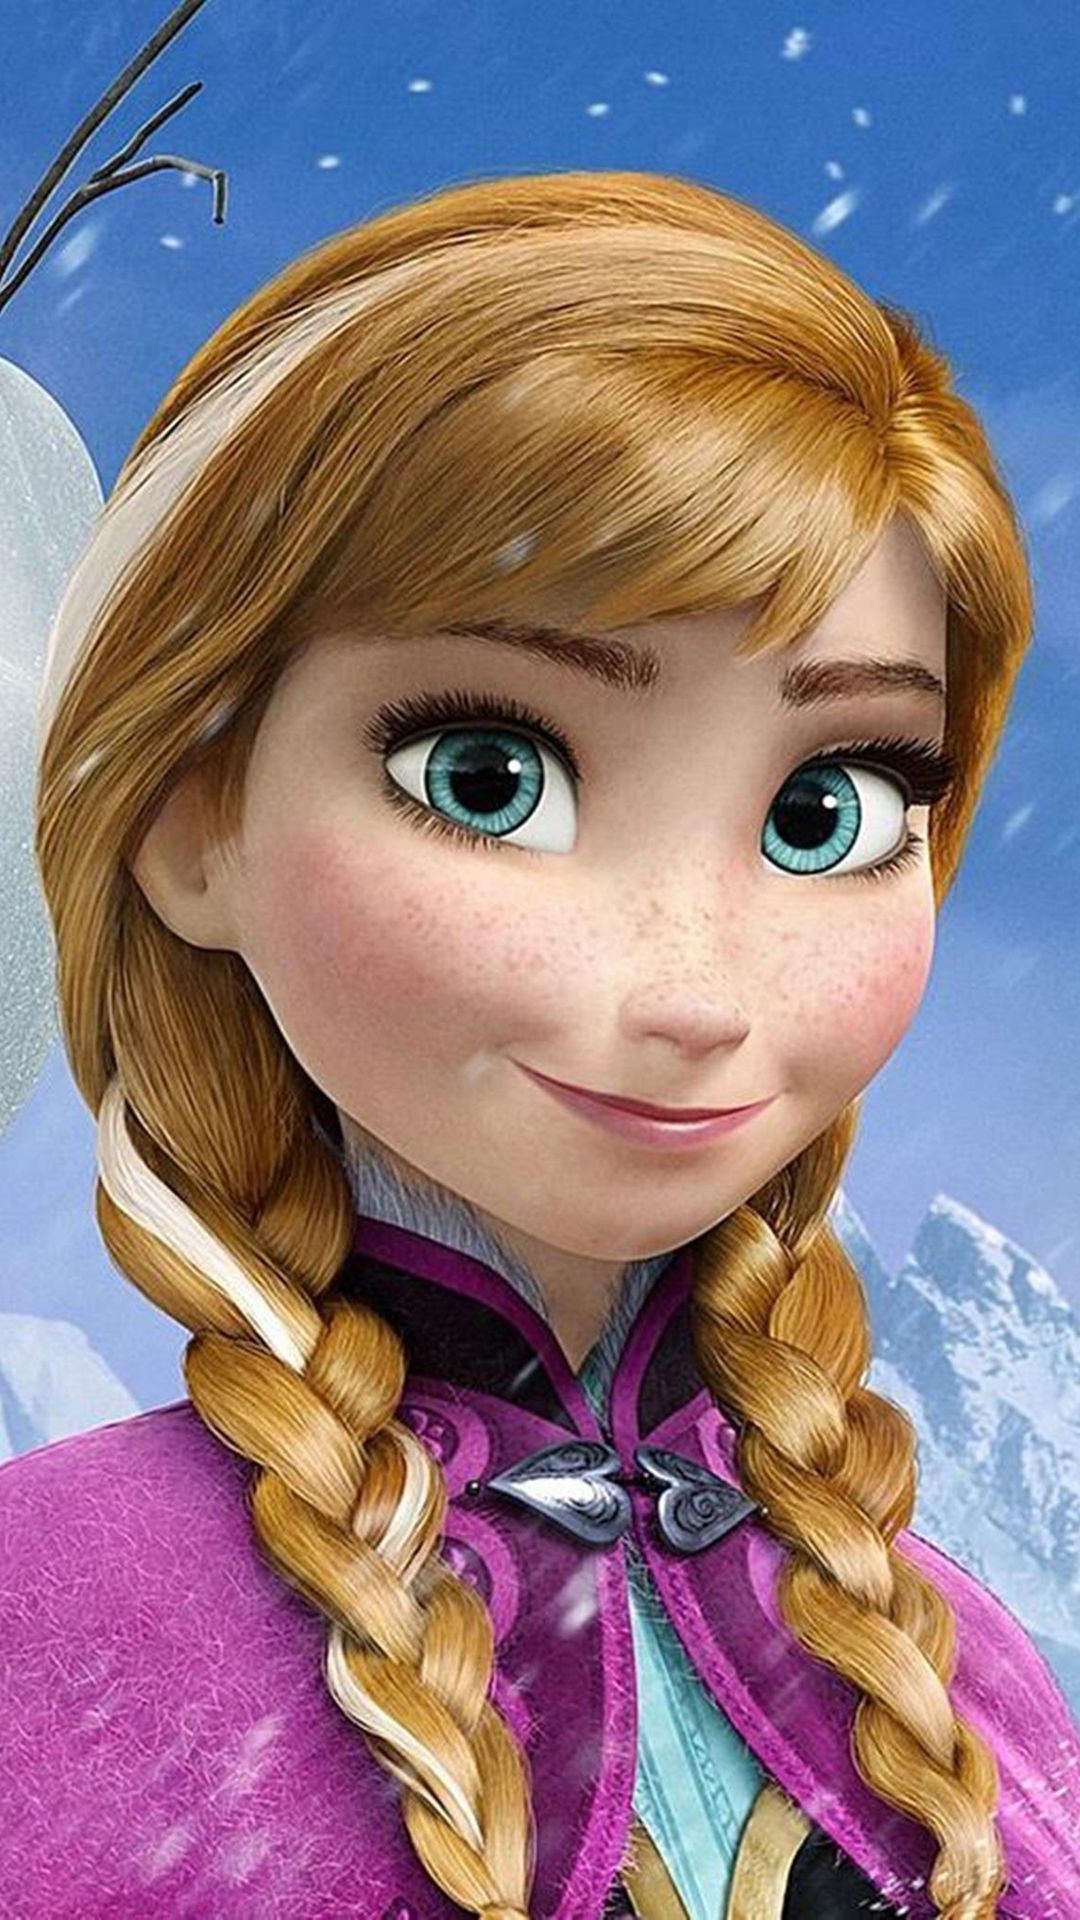 Frozen Anna - Kraina Lodu Anna I Olaf , HD Wallpaper & Backgrounds